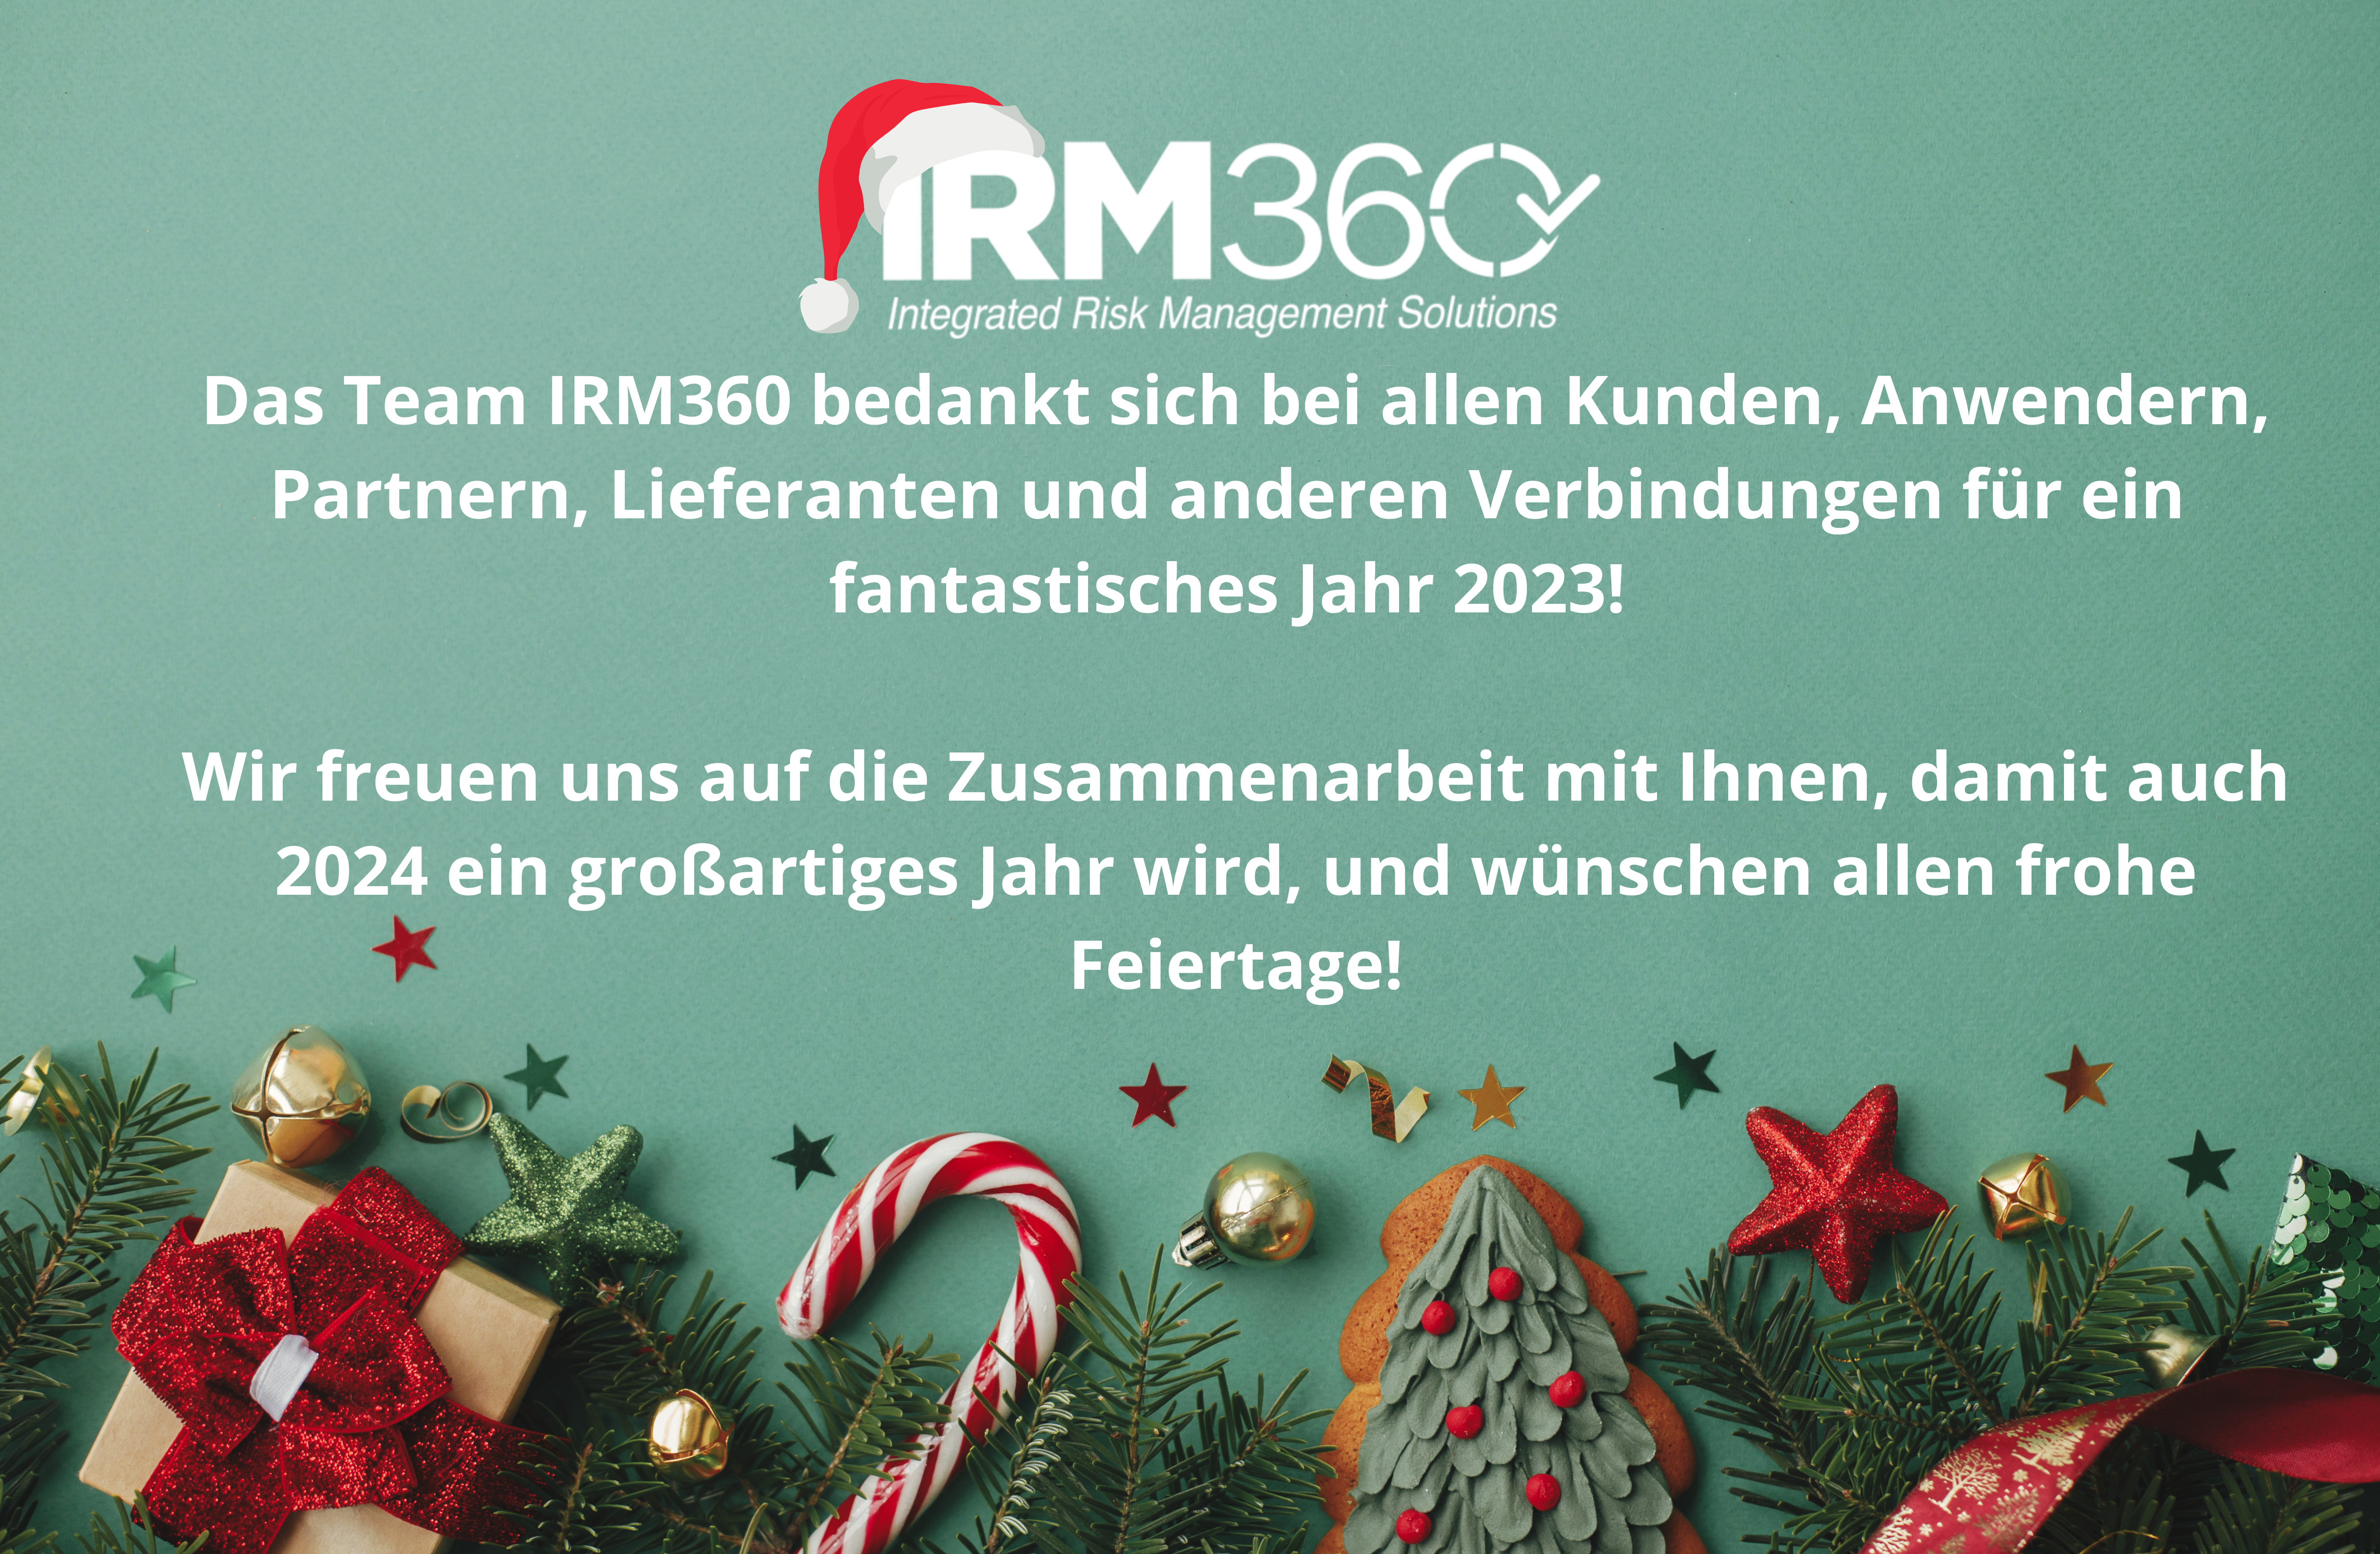 IRM360 wünscht allen ein frohes Weihnachtsfest und ein gutes neues Jahr!